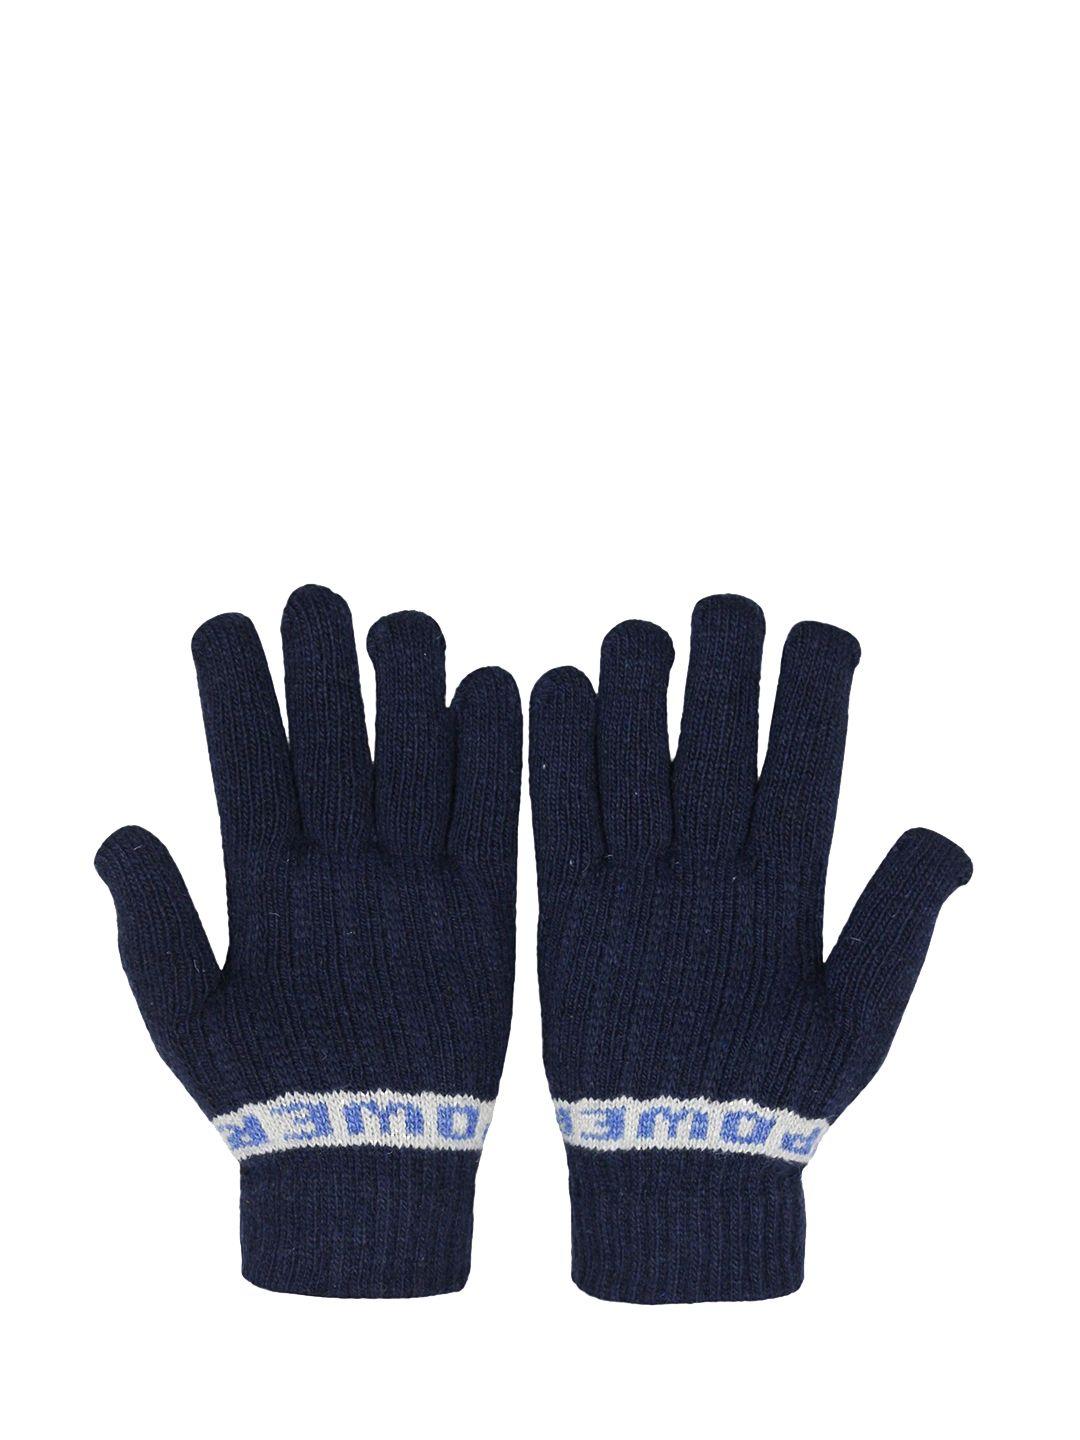 baesd unisex striped full finger woolen winter hand gloves